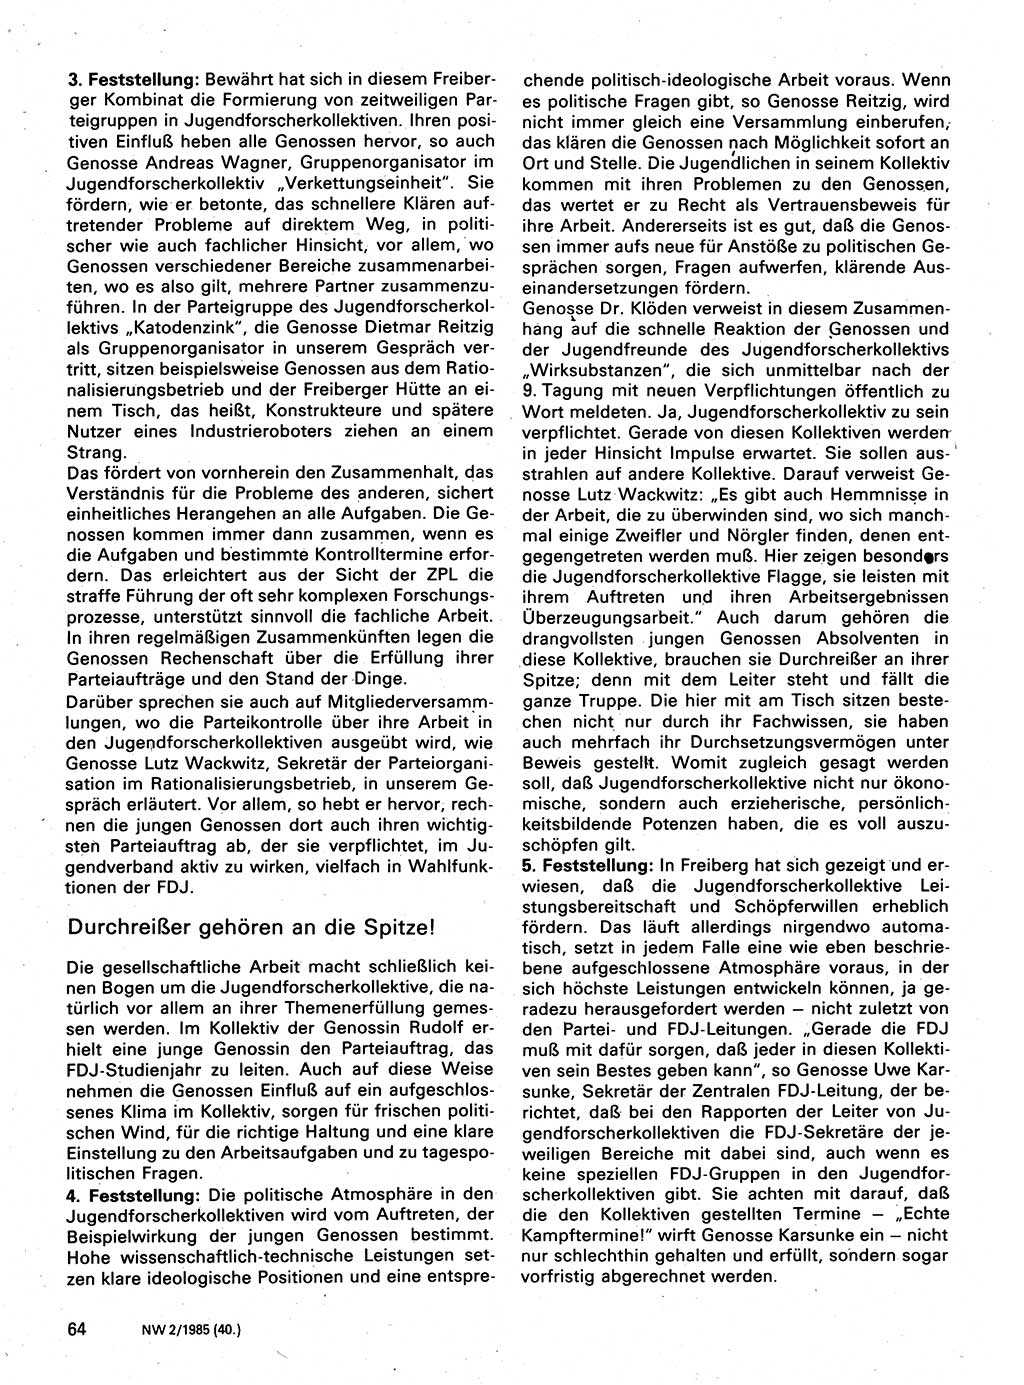 Neuer Weg (NW), Organ des Zentralkomitees (ZK) der SED (Sozialistische Einheitspartei Deutschlands) für Fragen des Parteilebens, 40. Jahrgang [Deutsche Demokratische Republik (DDR)] 1985, Seite 64 (NW ZK SED DDR 1985, S. 64)